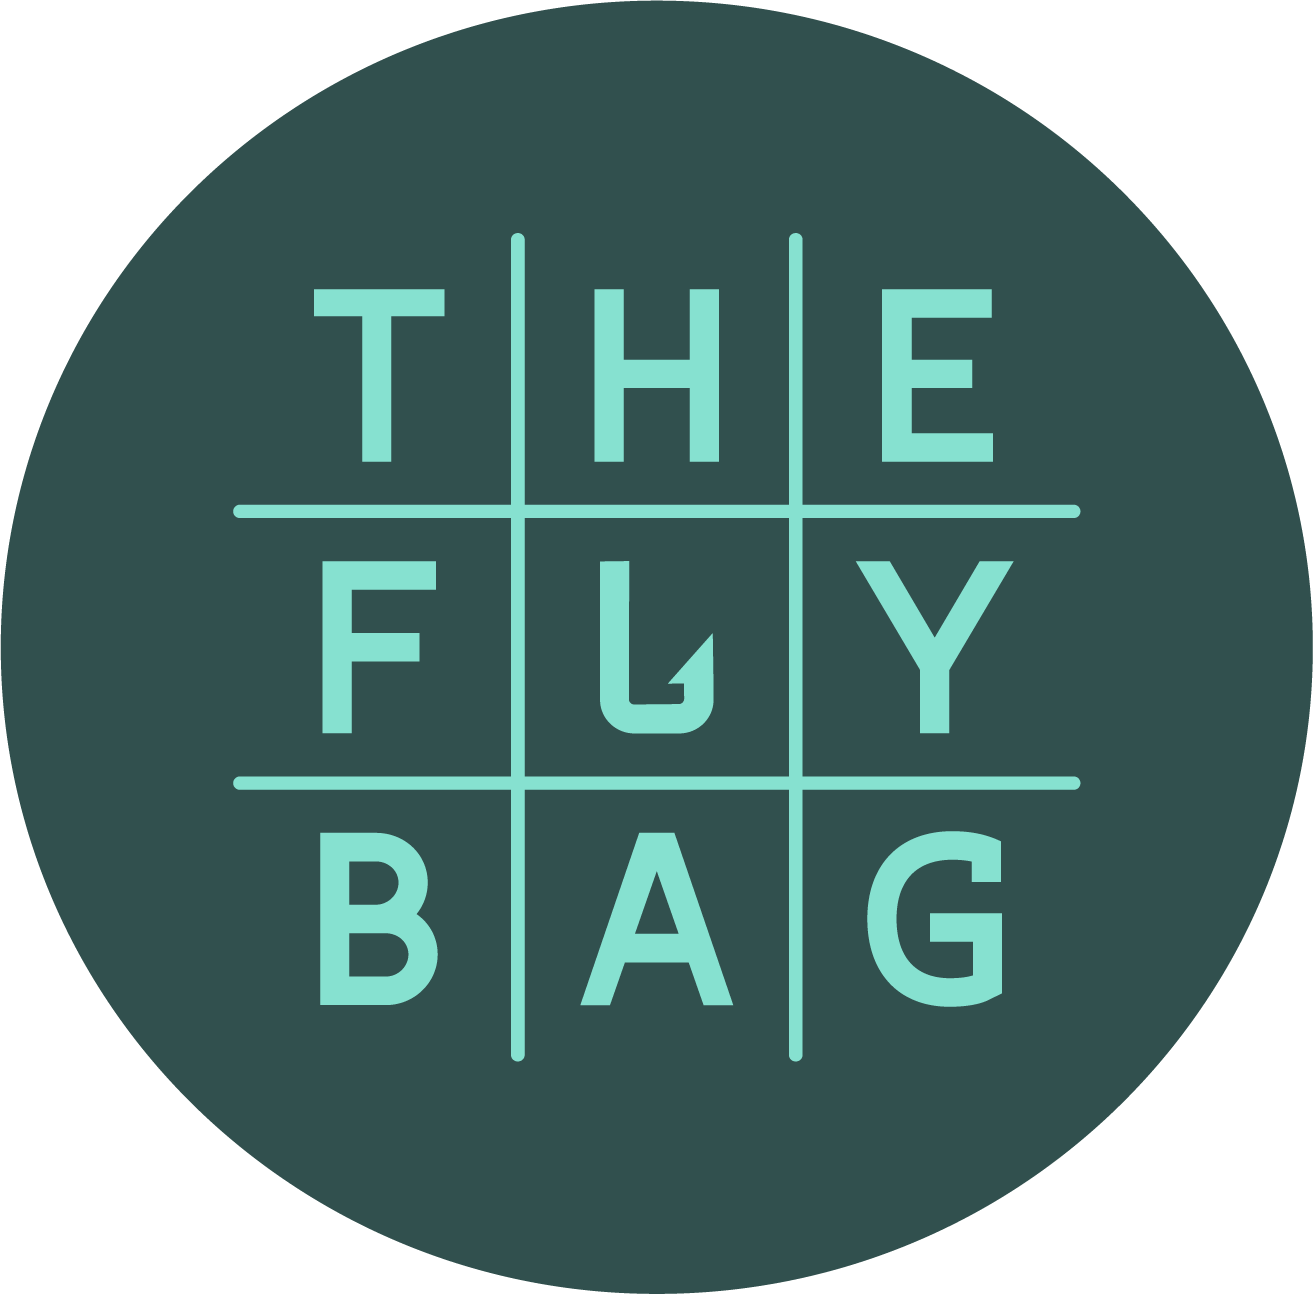 FlyBag